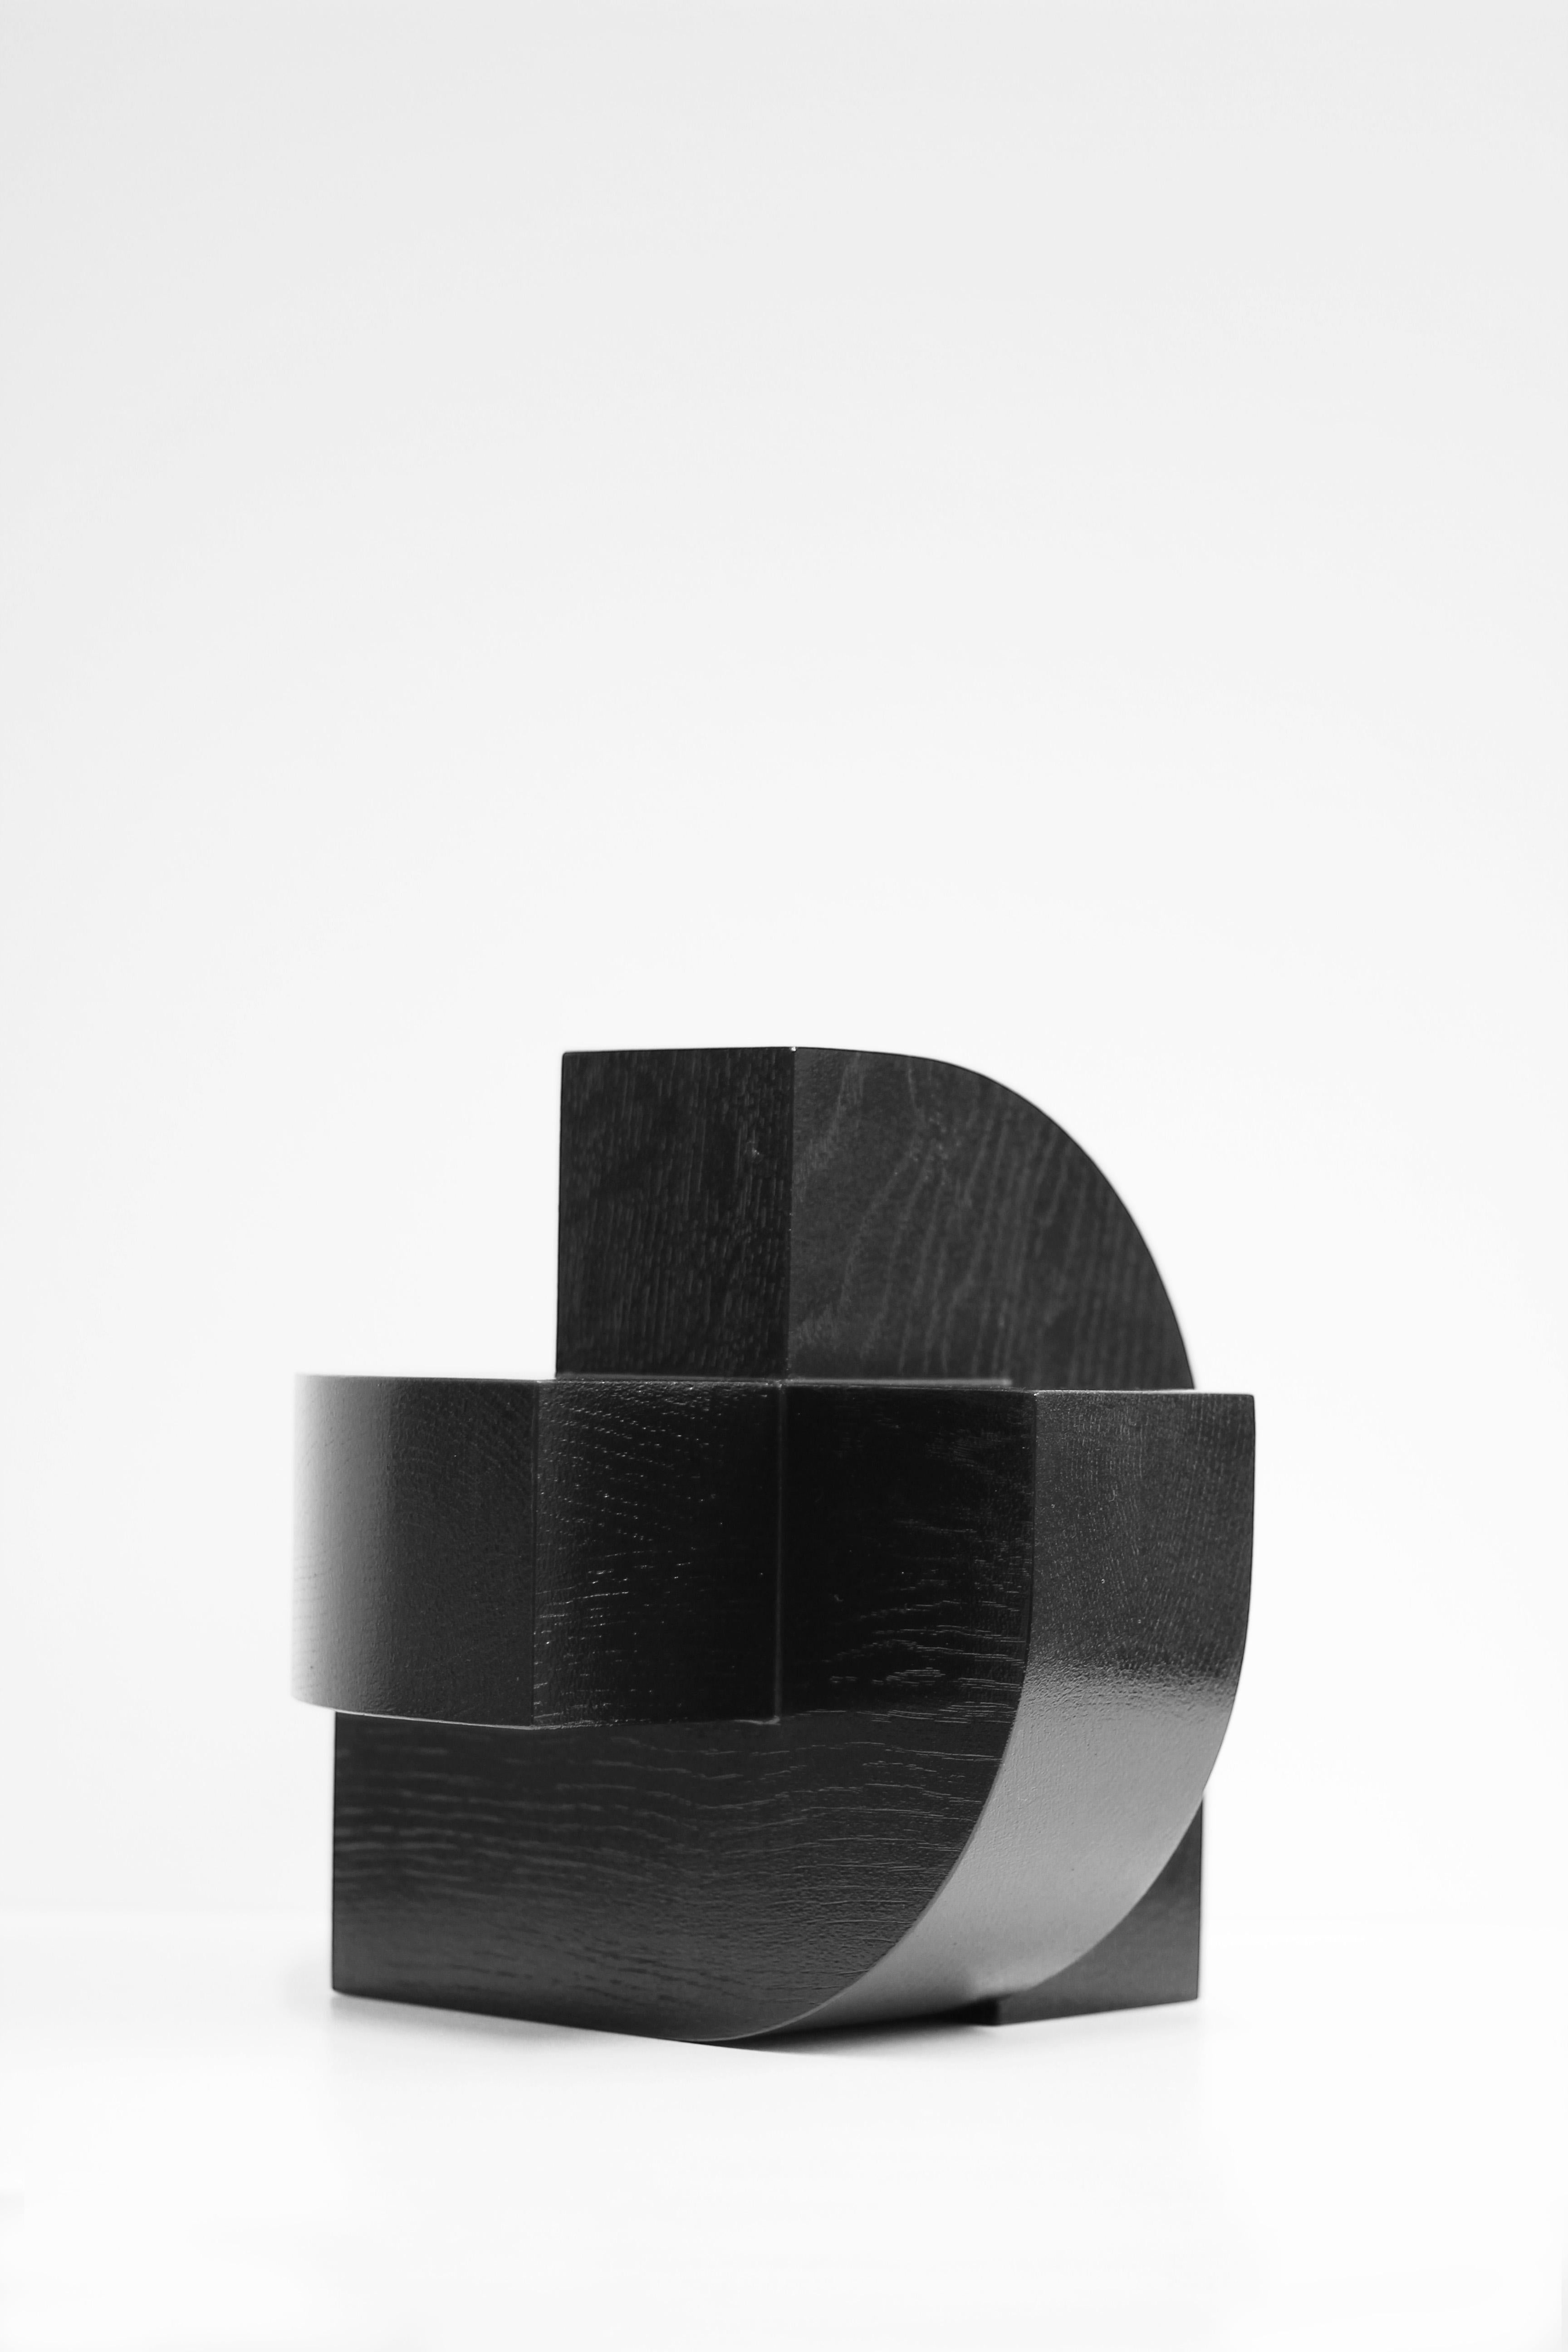 Schwarze Skulptur aus massiver Eiche, X4 J, vom niederländischen Studio Verbaan (Niederländisch) im Angebot